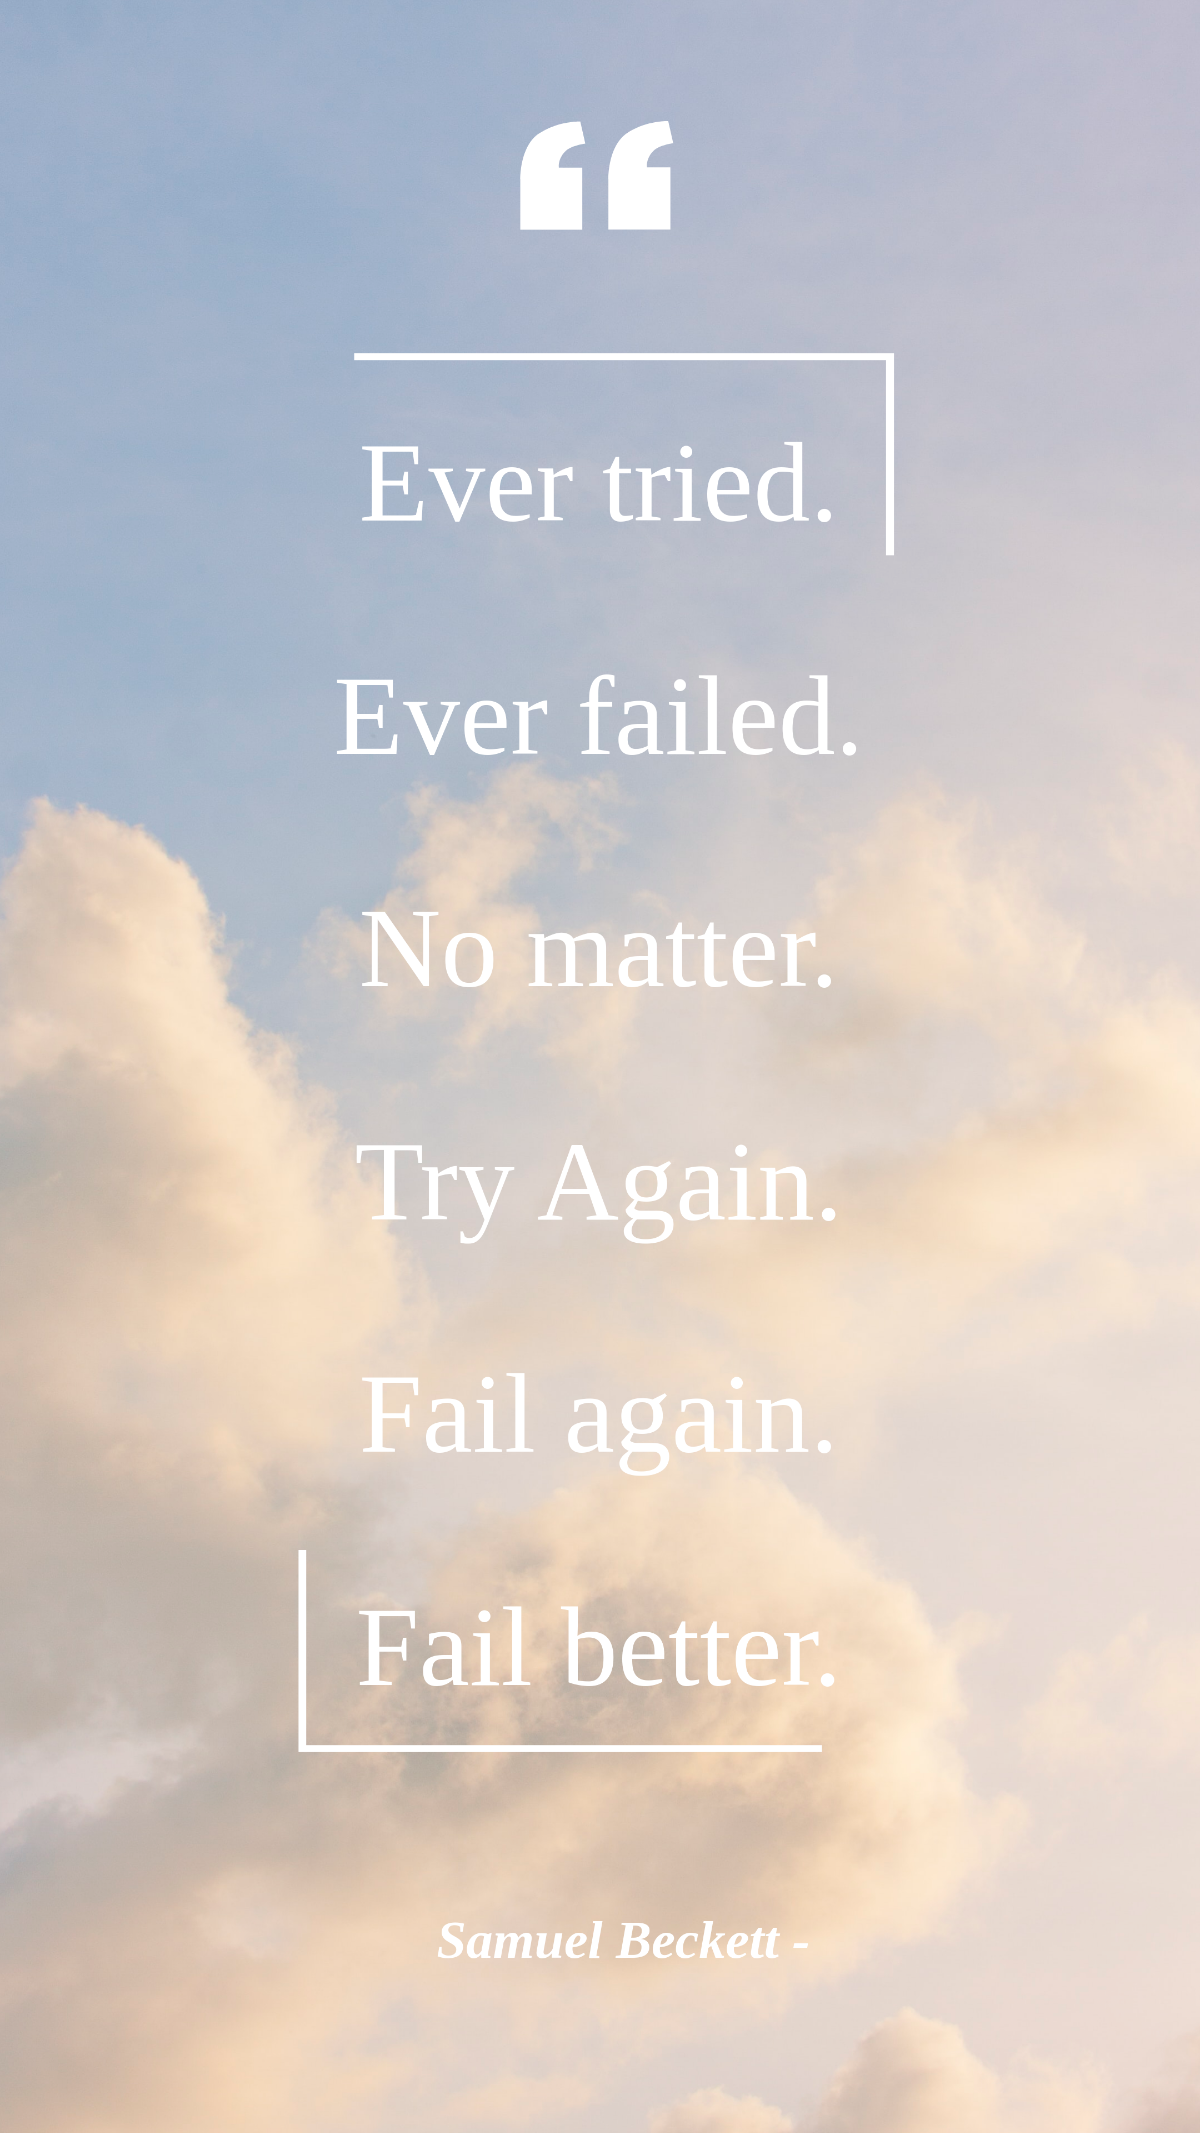 Samuel Beckett - Ever tried. Ever failed. No matter. Try Again. Fail again. Fail better.